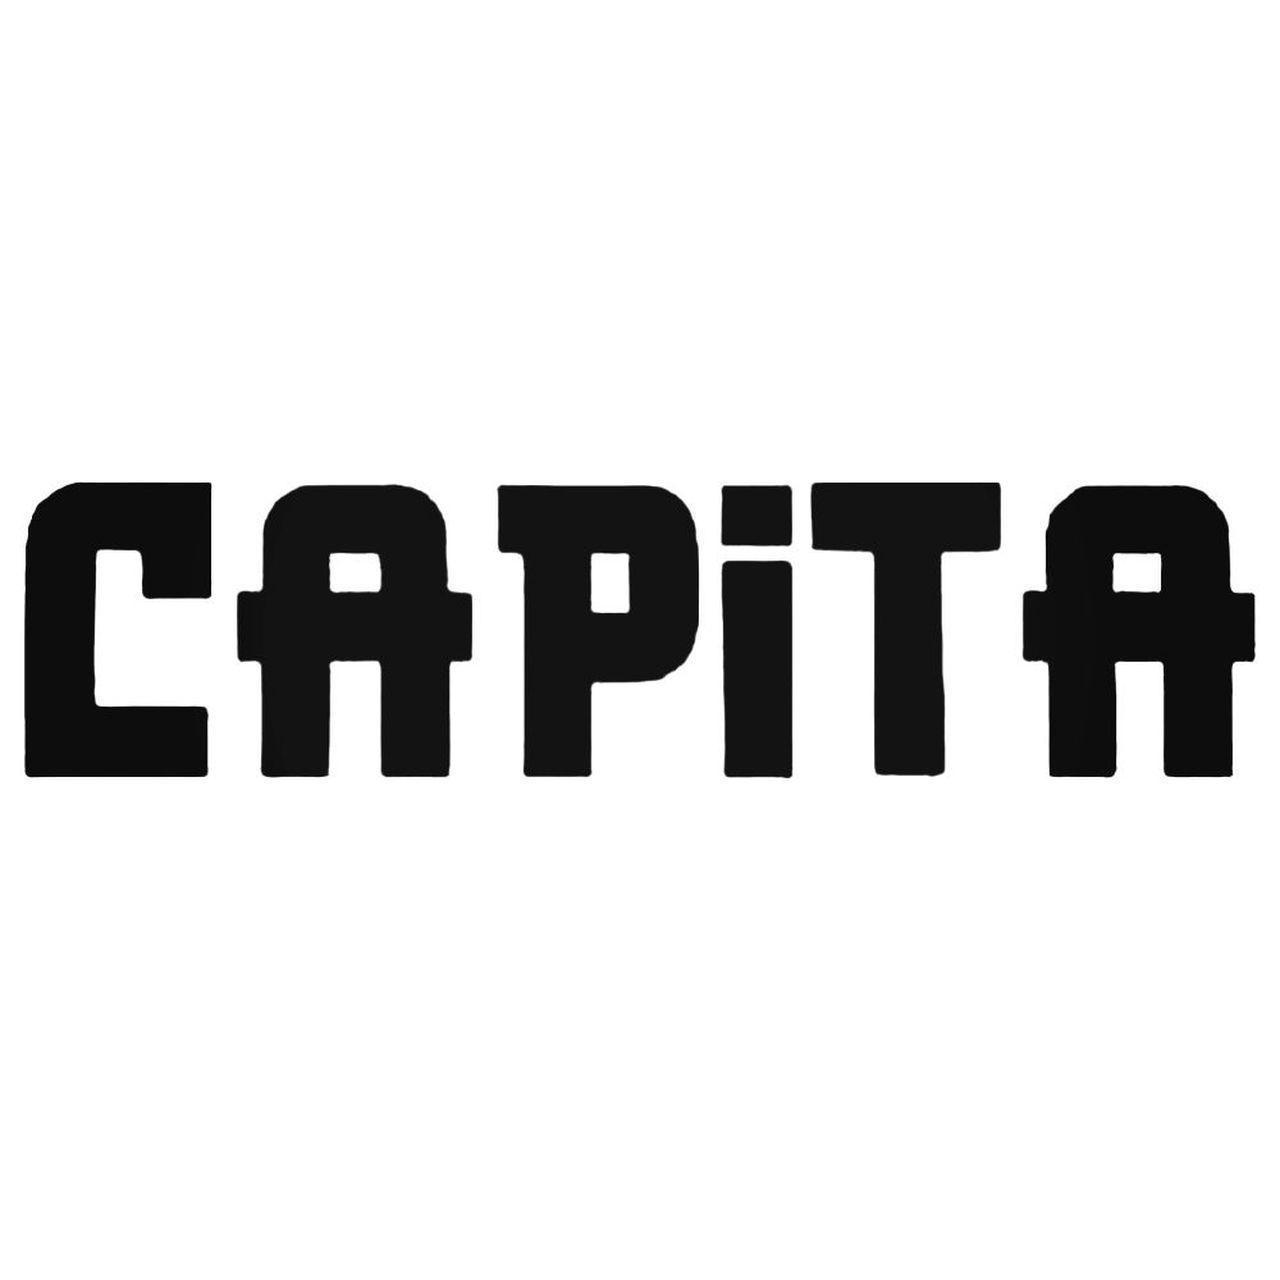 Capita Logo - Capita Text Decal Sticker